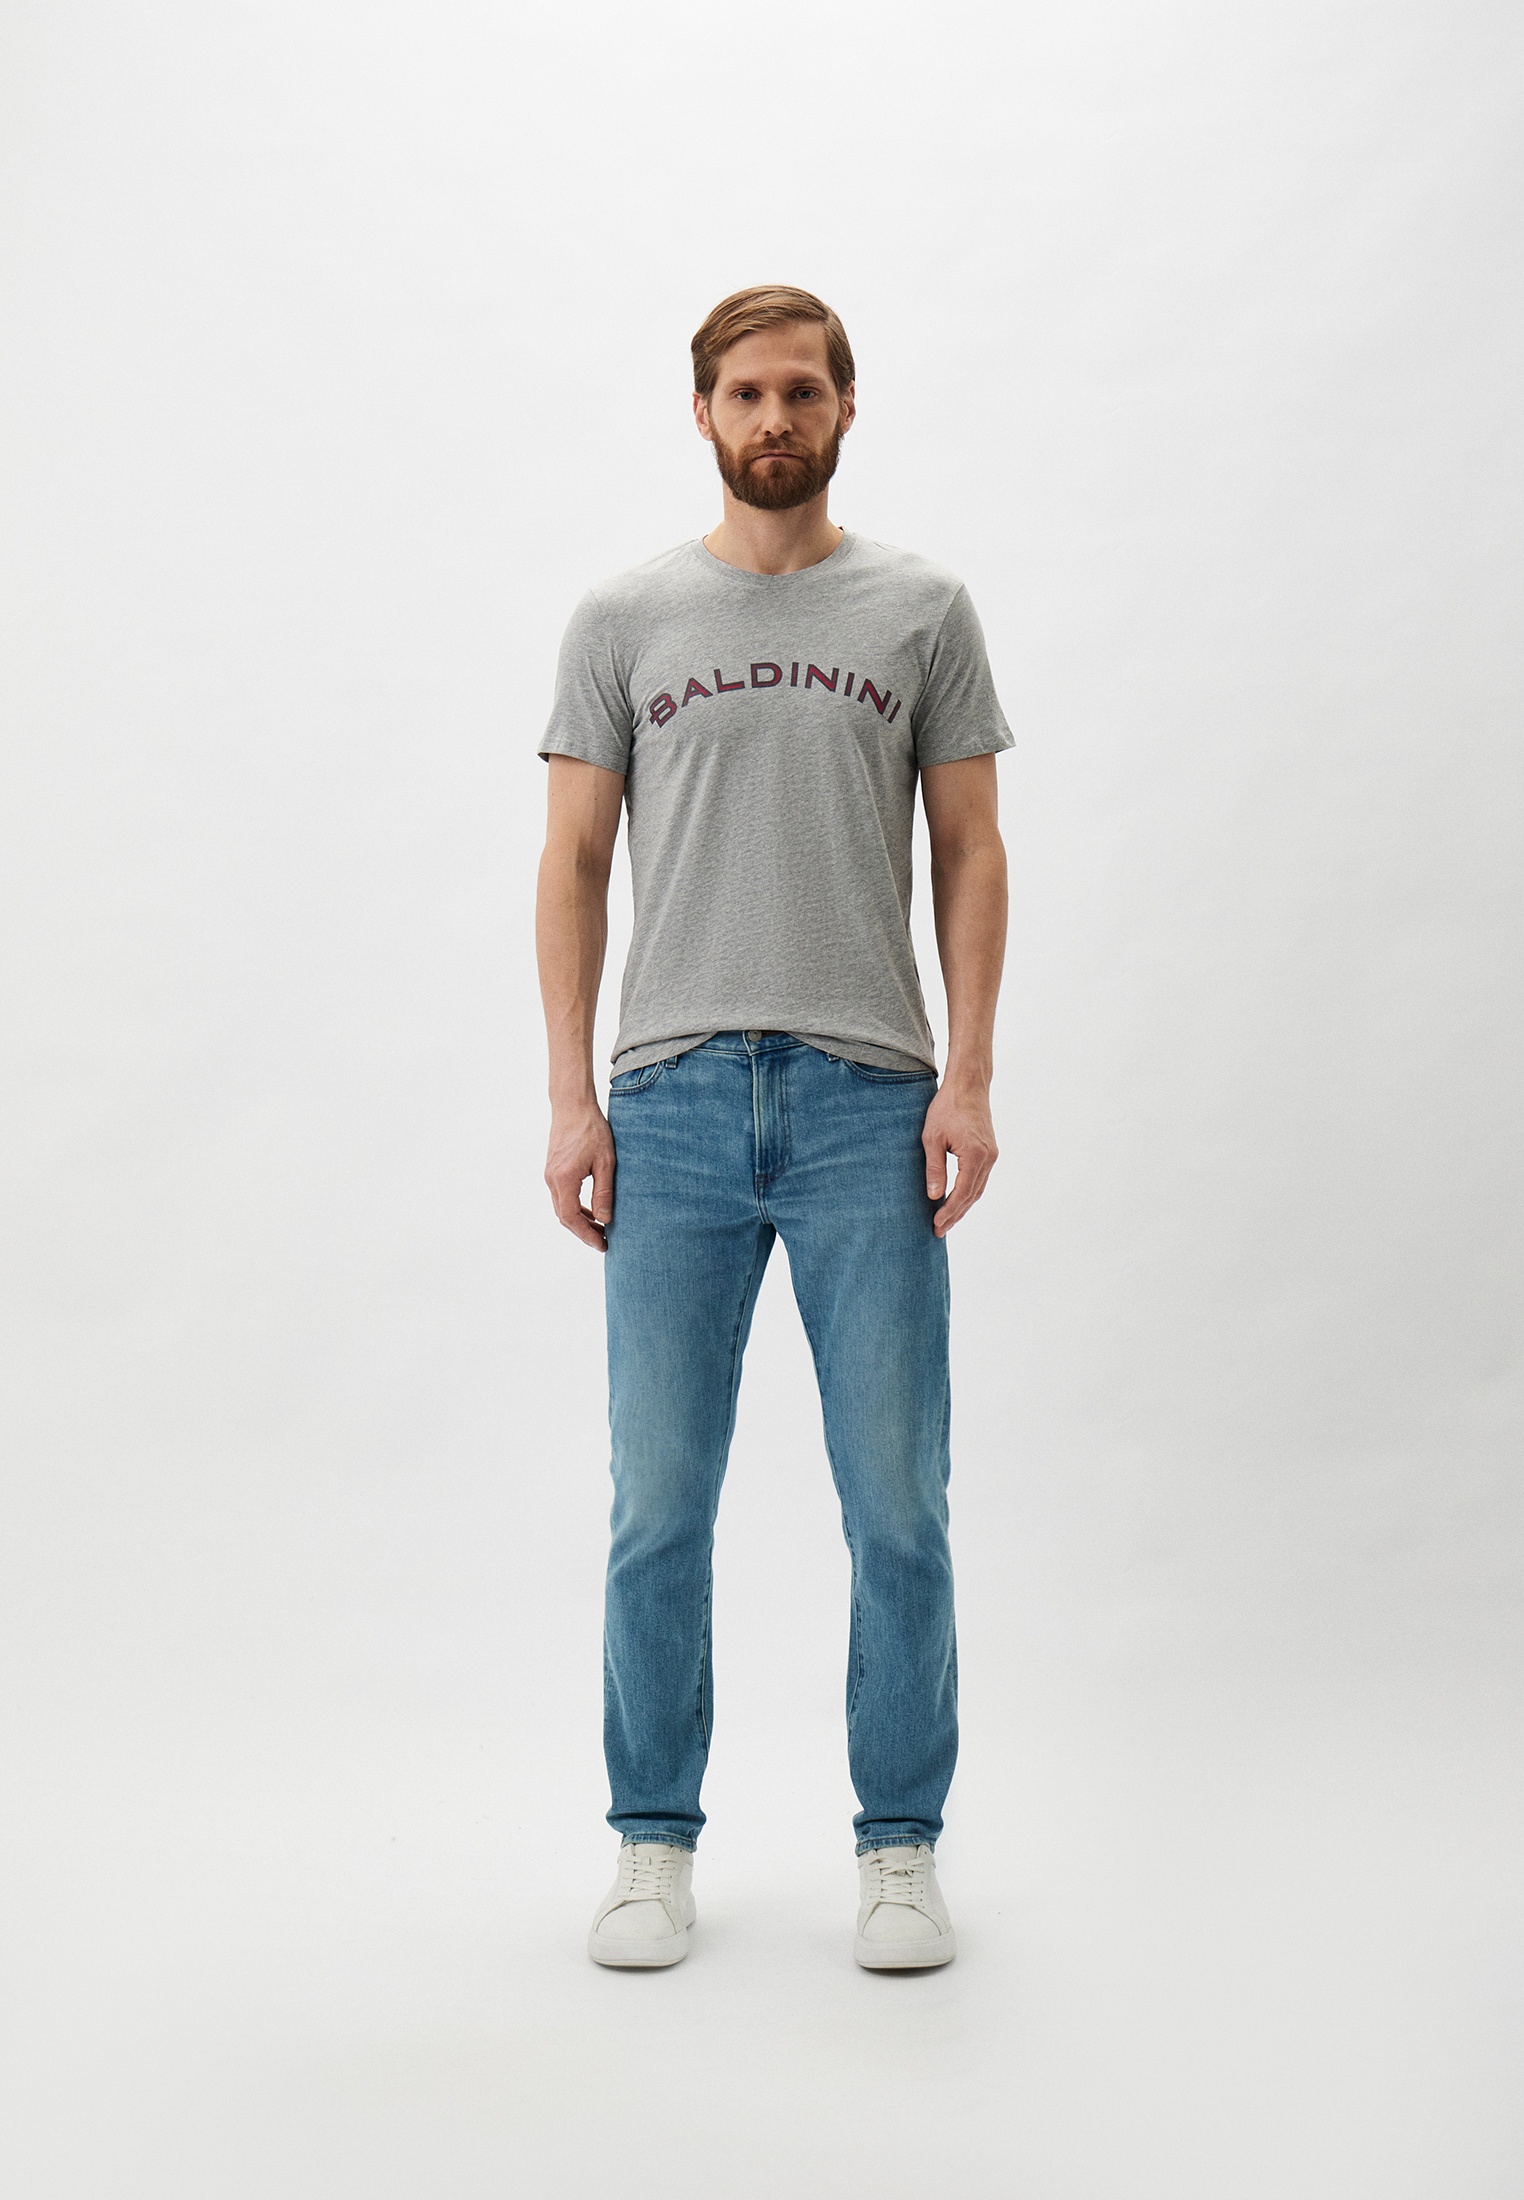 Мужская футболка Baldinini (Балдинини) B-OLM-M001: изображение 2